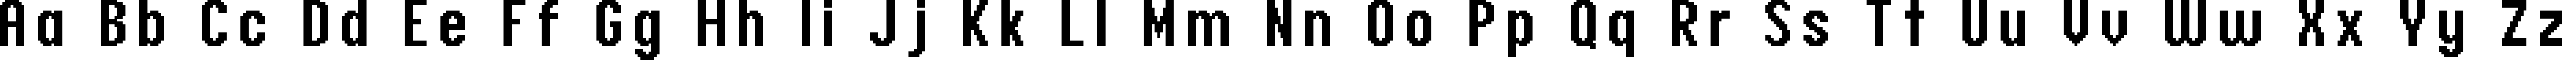 Пример написания английского алфавита шрифтом header 17_68